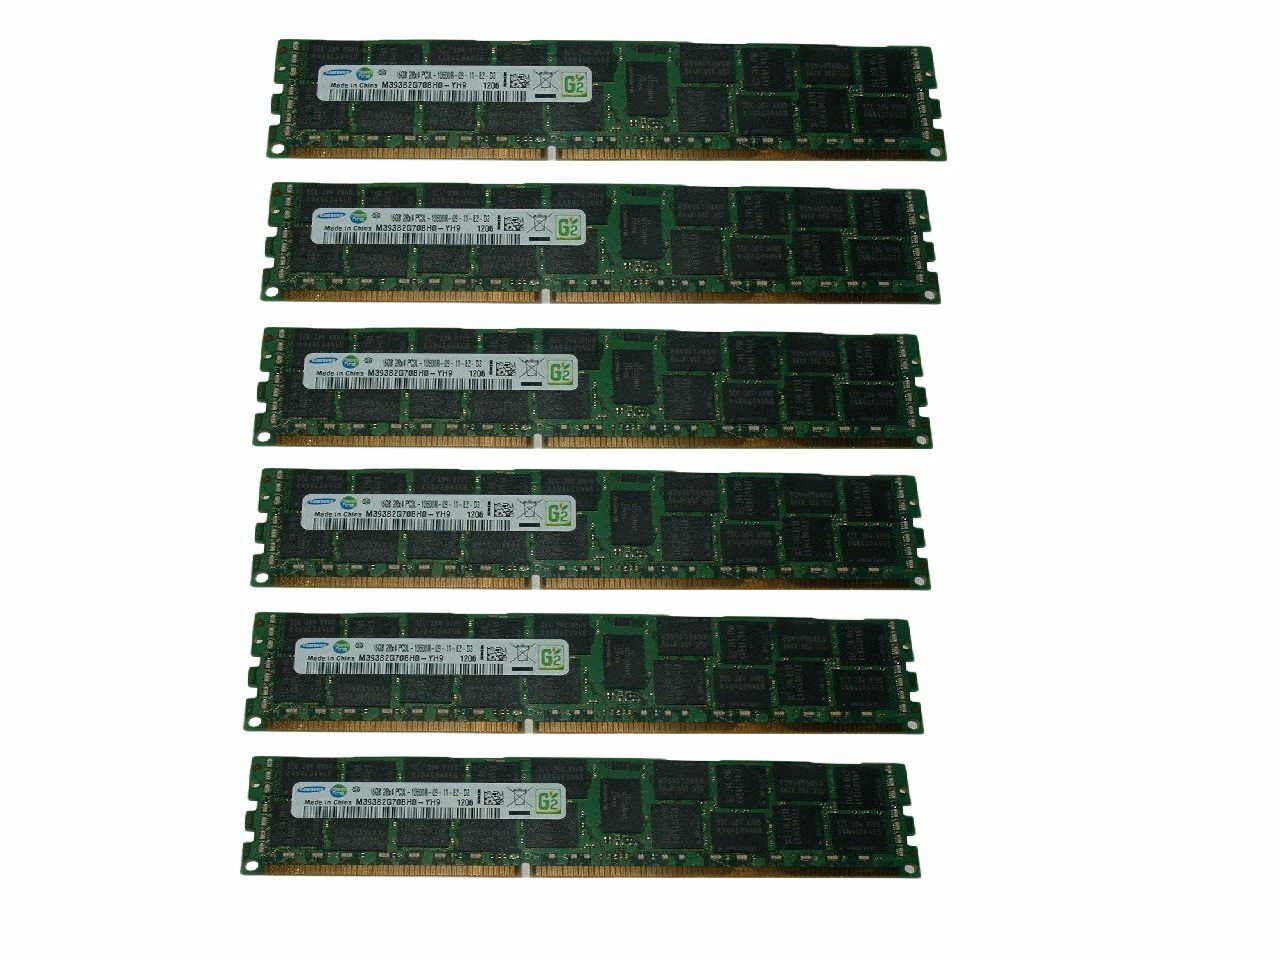 96GB (6x 16GB) 10600R RAM Memory For HP Proliant DL360 DL380 DL580 G6 G7 G8